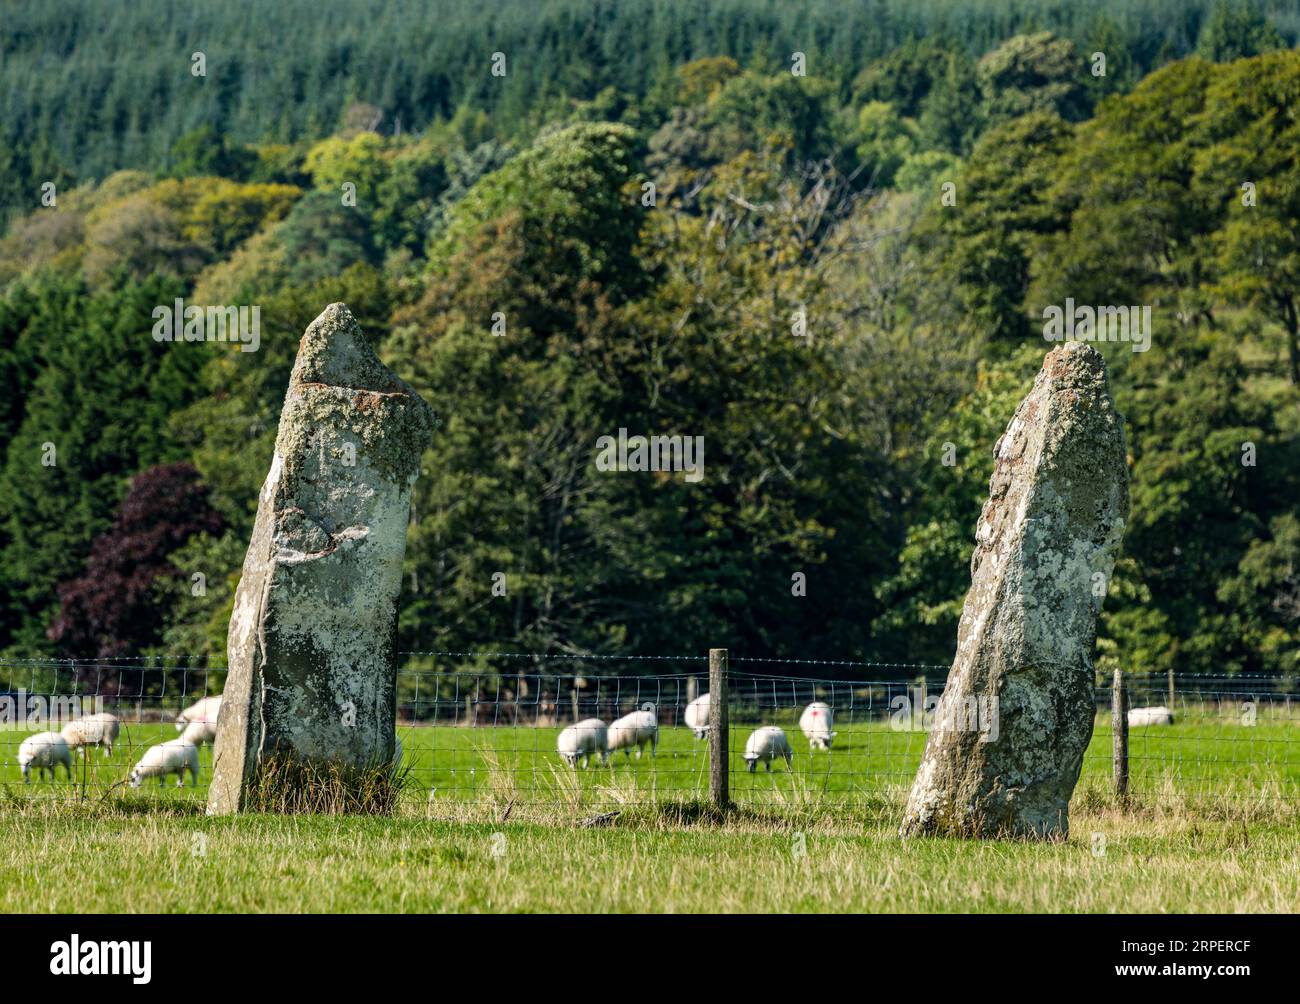 Nether Largie Standing Stones Antike Monument in Grass Field, Kilmartin Glen, Argyll, Schottland, Großbritannien Stockfoto